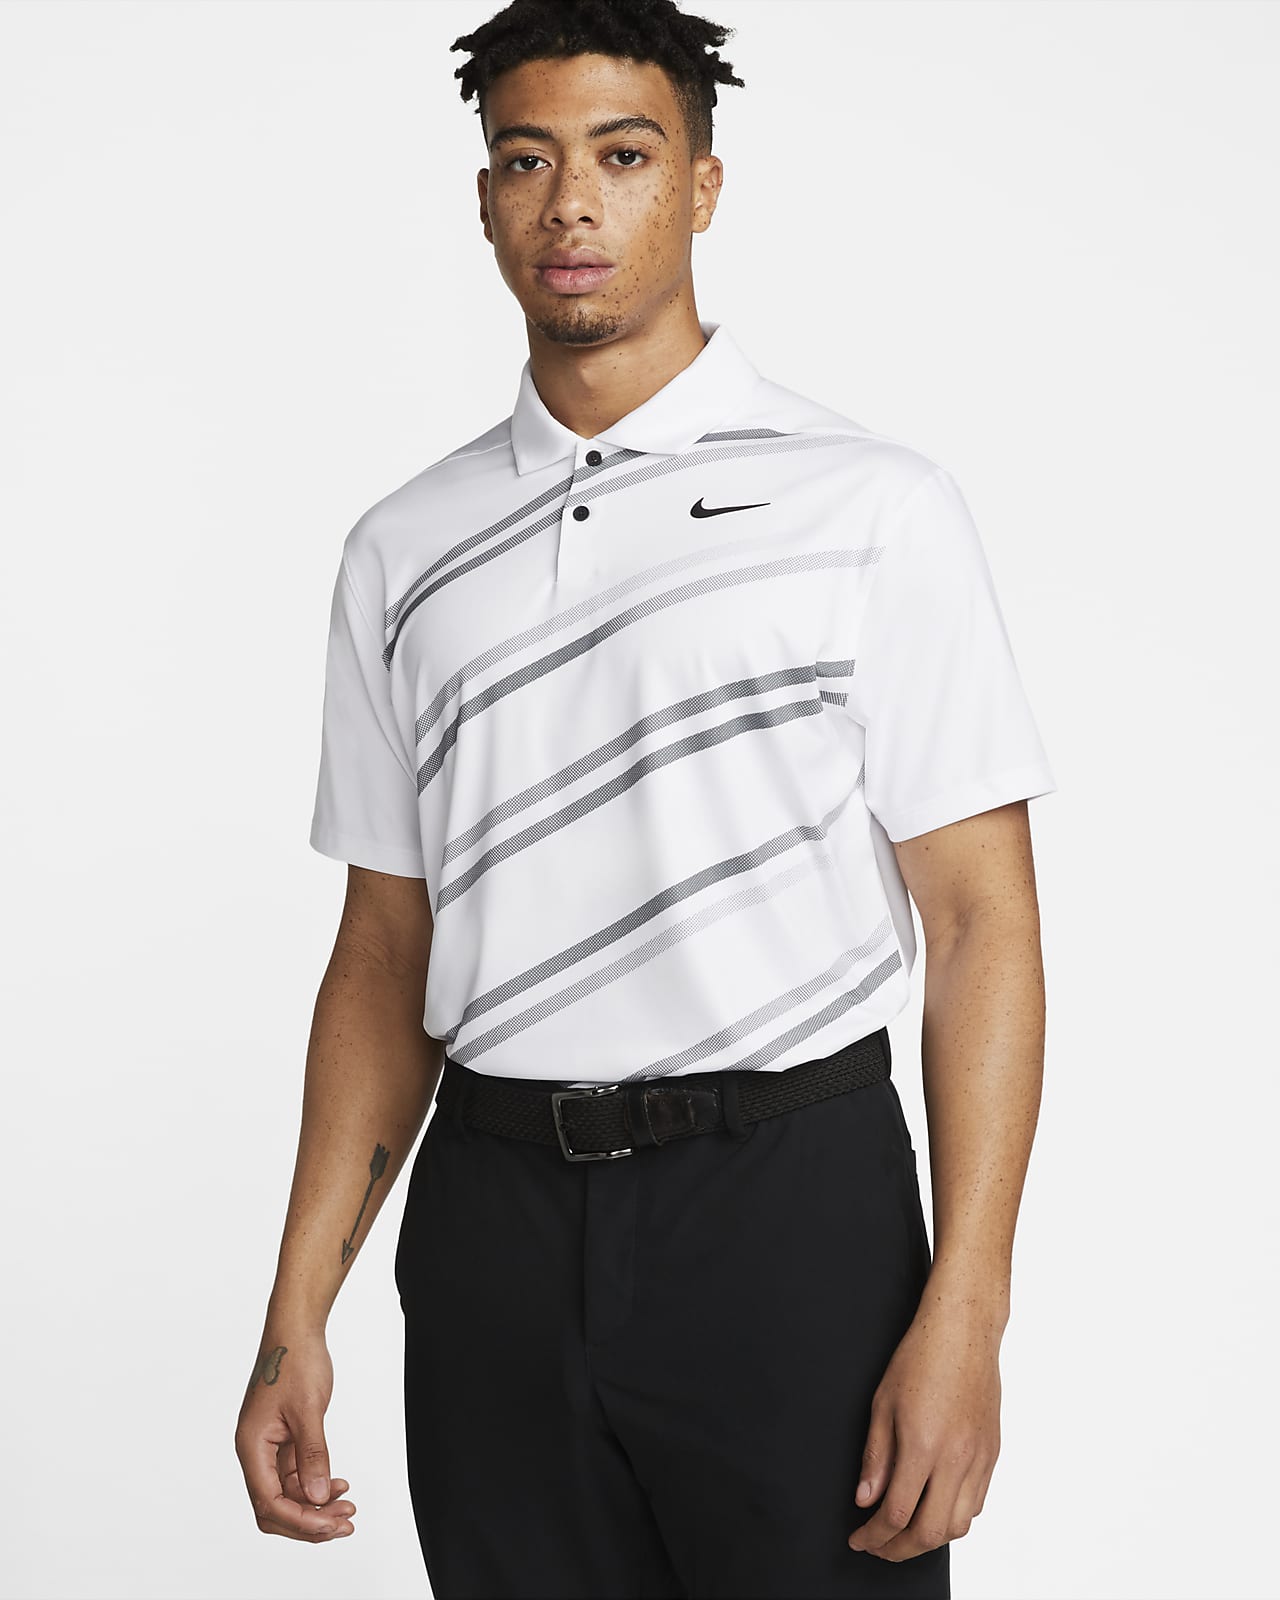 Pánská golfová polokošile Nike Dri-FIT Vapor s potiskem